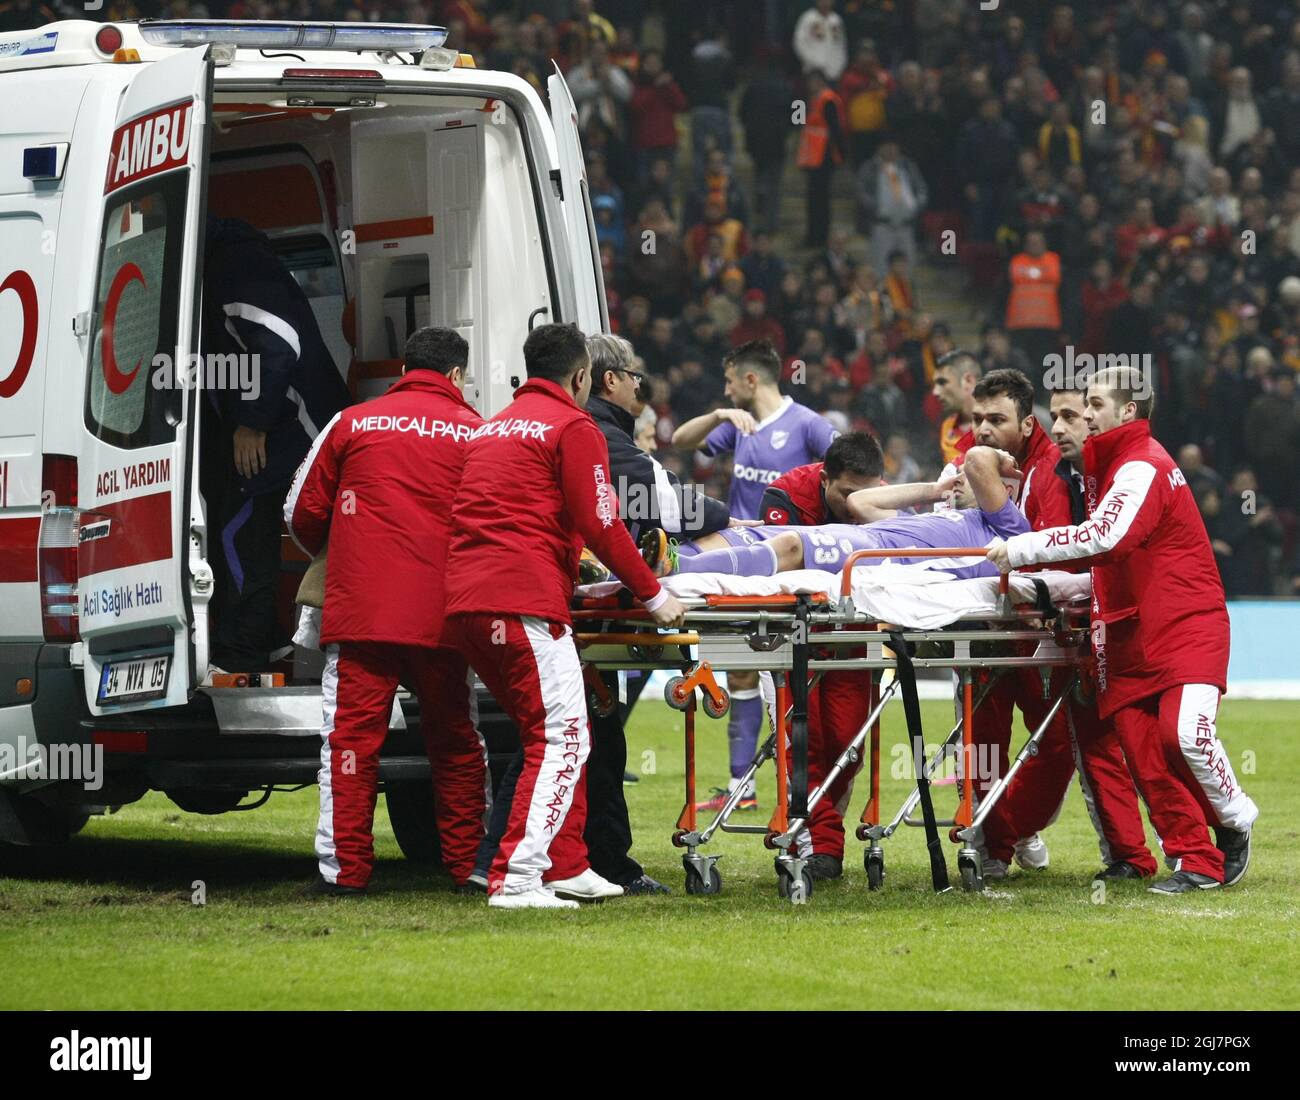 David Barral de Orduspor se encuentra en el campo de juego y en una ambulancia en espera durante su partido de fútbol de la Superliga turca Galatasaray entre Orduspor en el estadio AliSamiyen Spor Kompleksi TT en Estambul, Turquía. Foto de stock